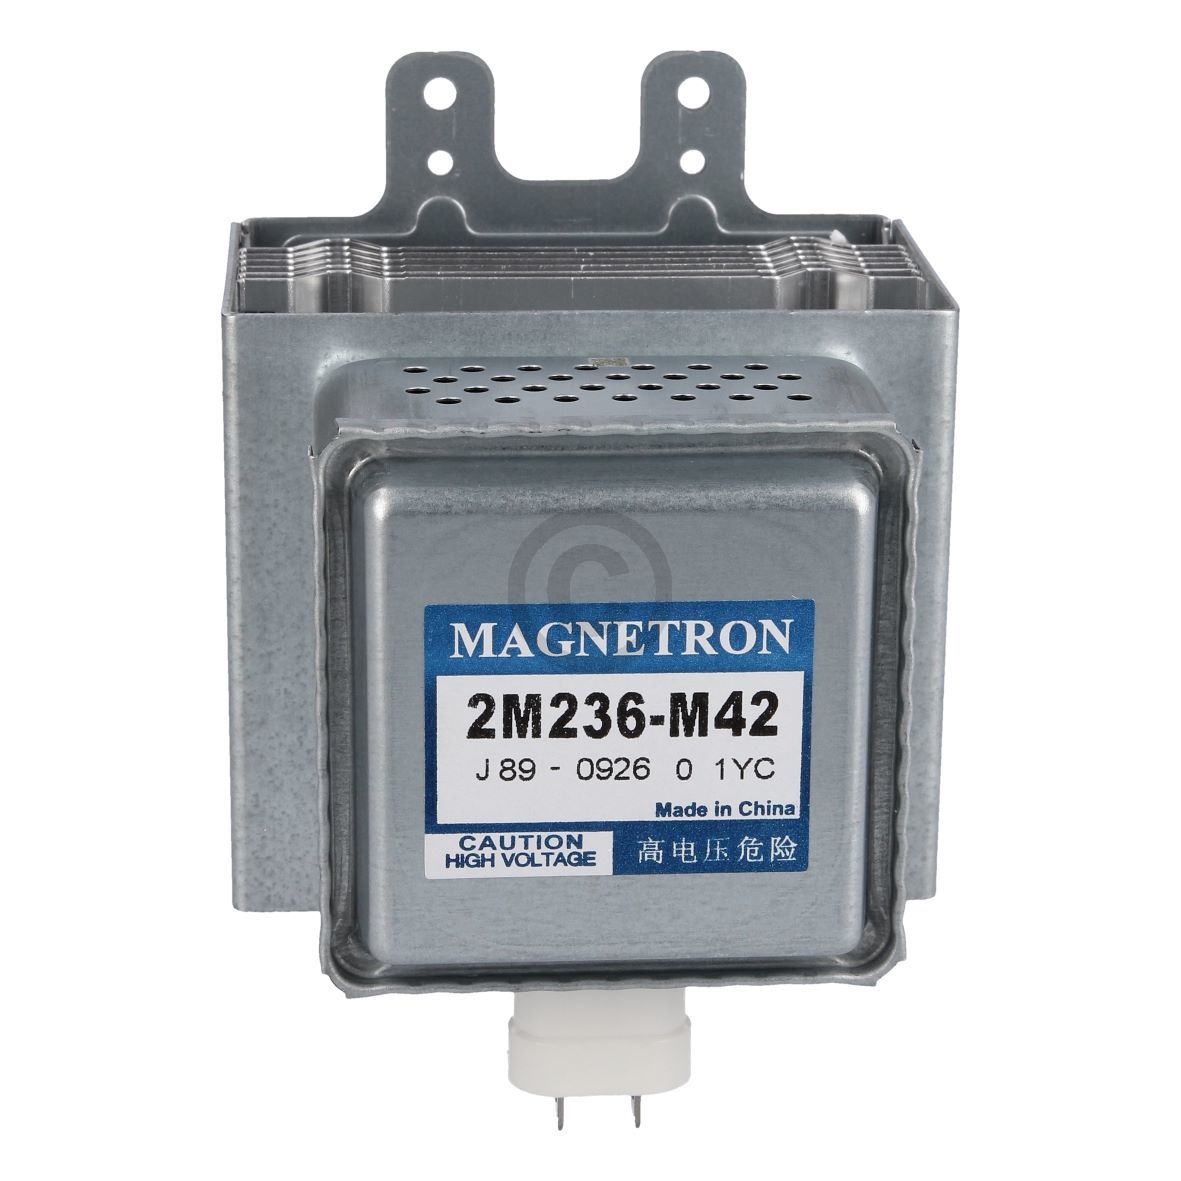 Magnetron NEFF 2M236-M42 J89-0926 für Mikrowelle Backofen mit Mikrowelle (KD-00642655)